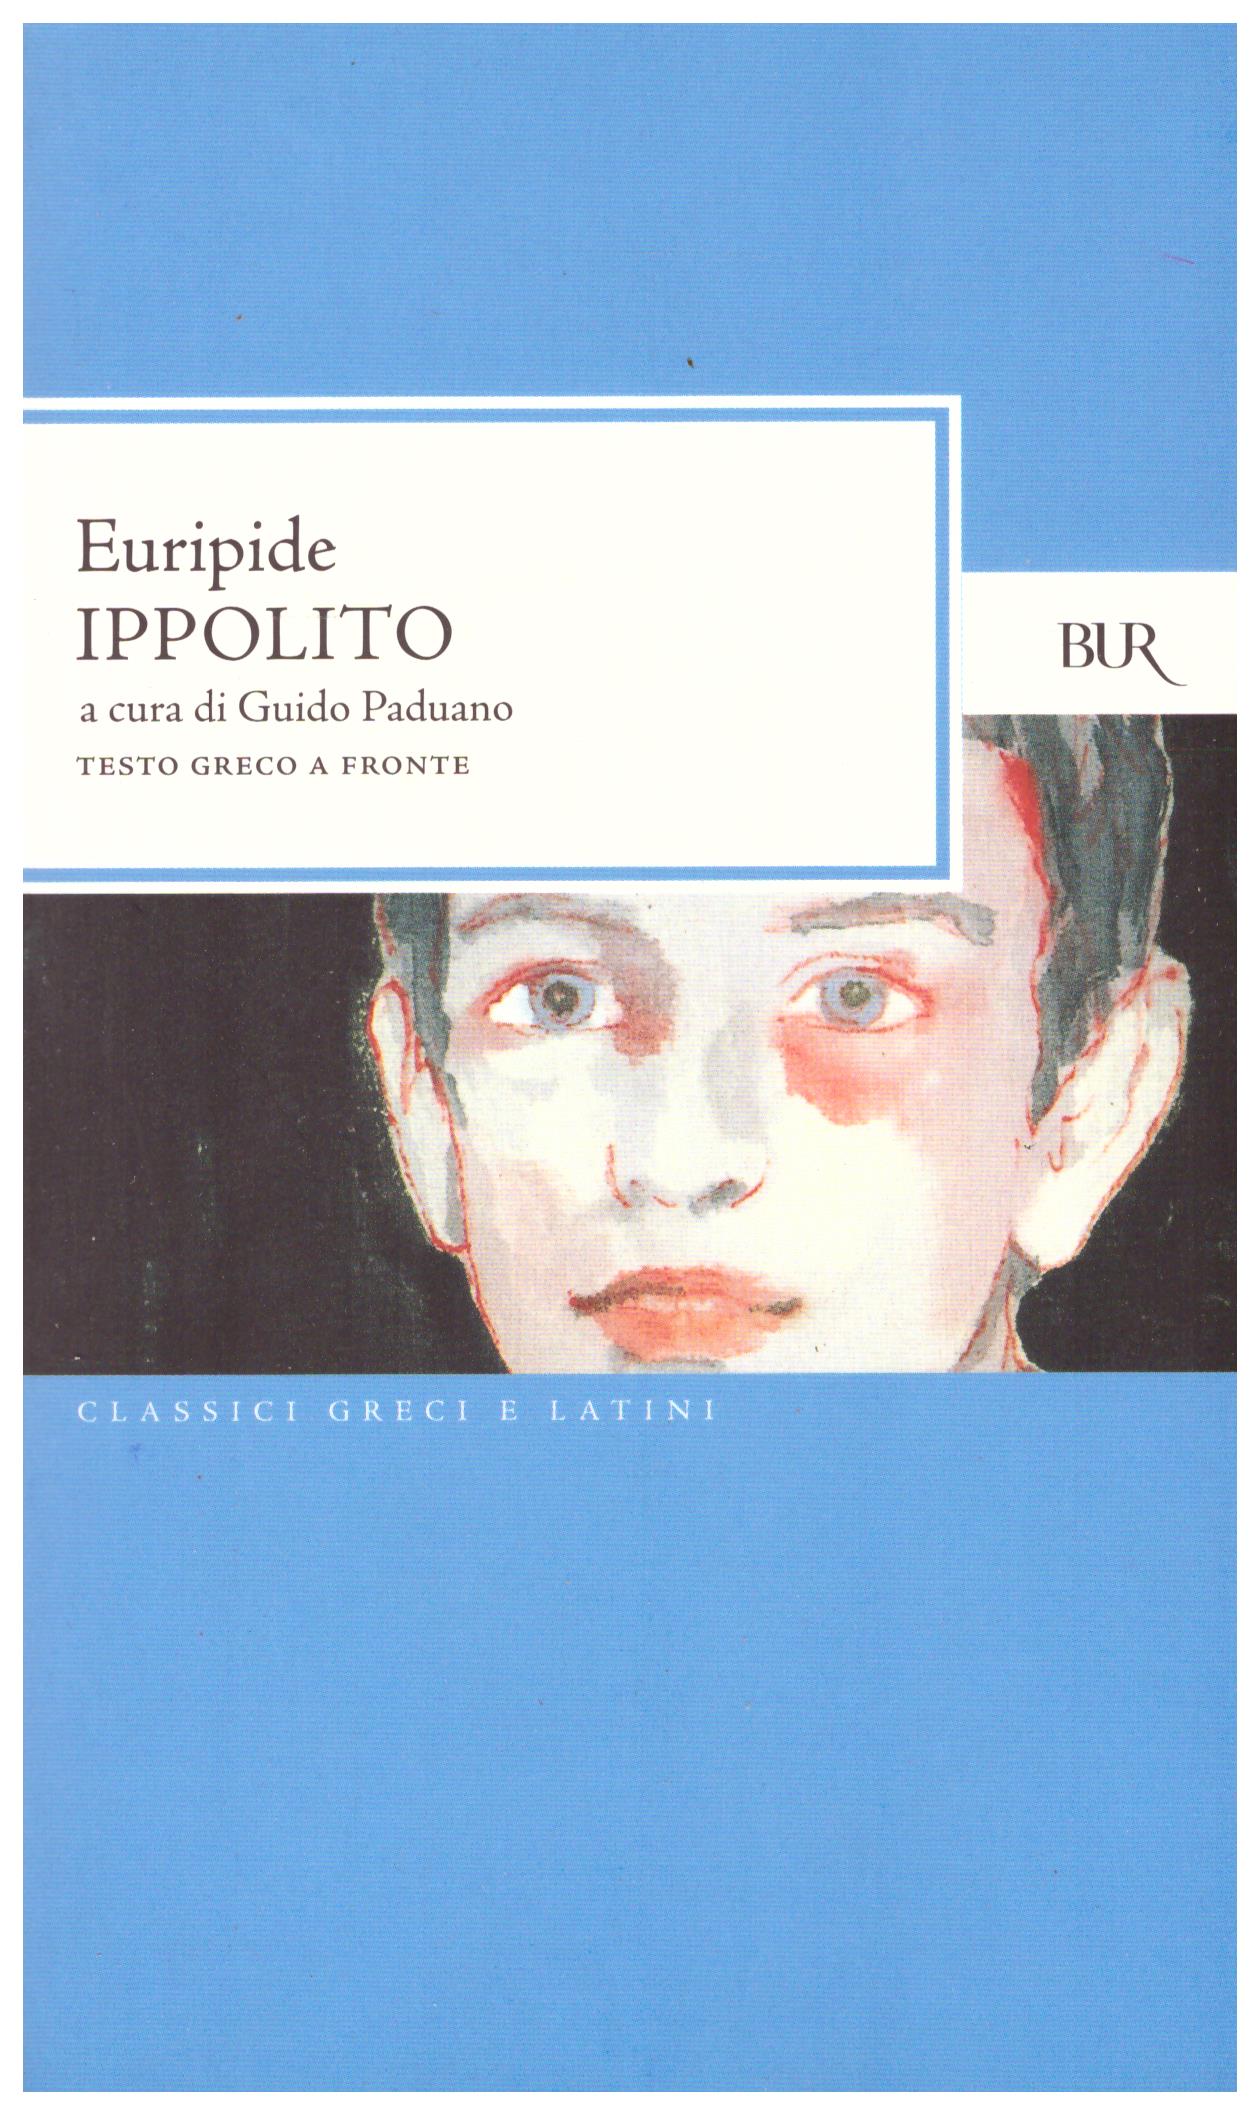 Titolo: Ippolito Autore: Euripide Editore: Bur, 2008